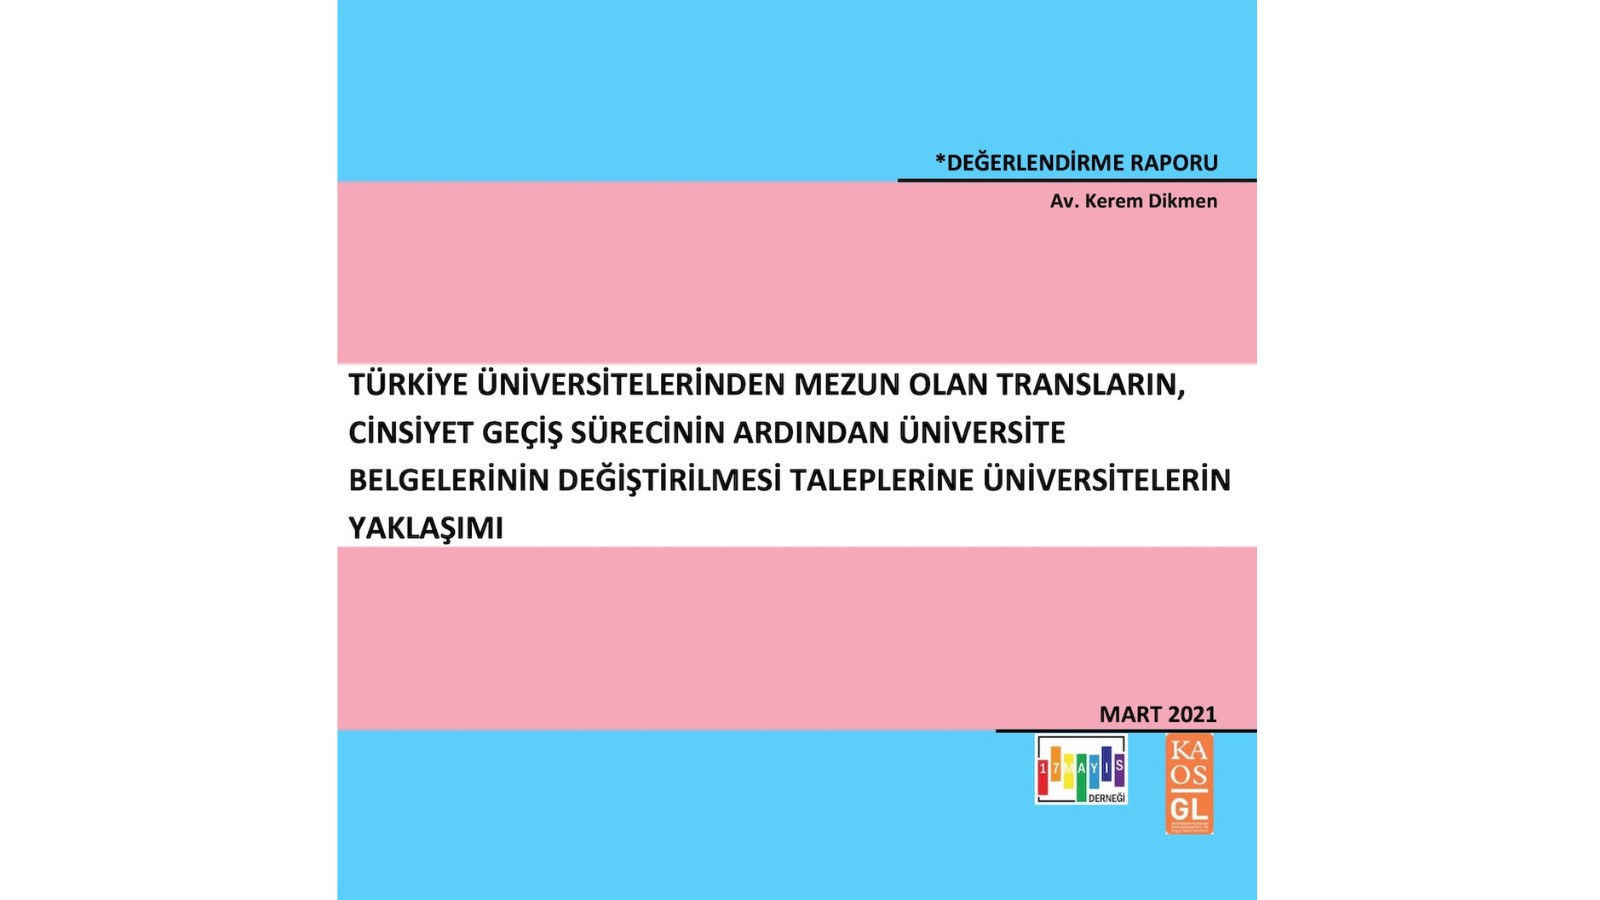 Transların Üniversite Belgelerinin Değiştirilmesi Taleplerine Üniversitelerin Yaklaşımı - 17 Mayıs